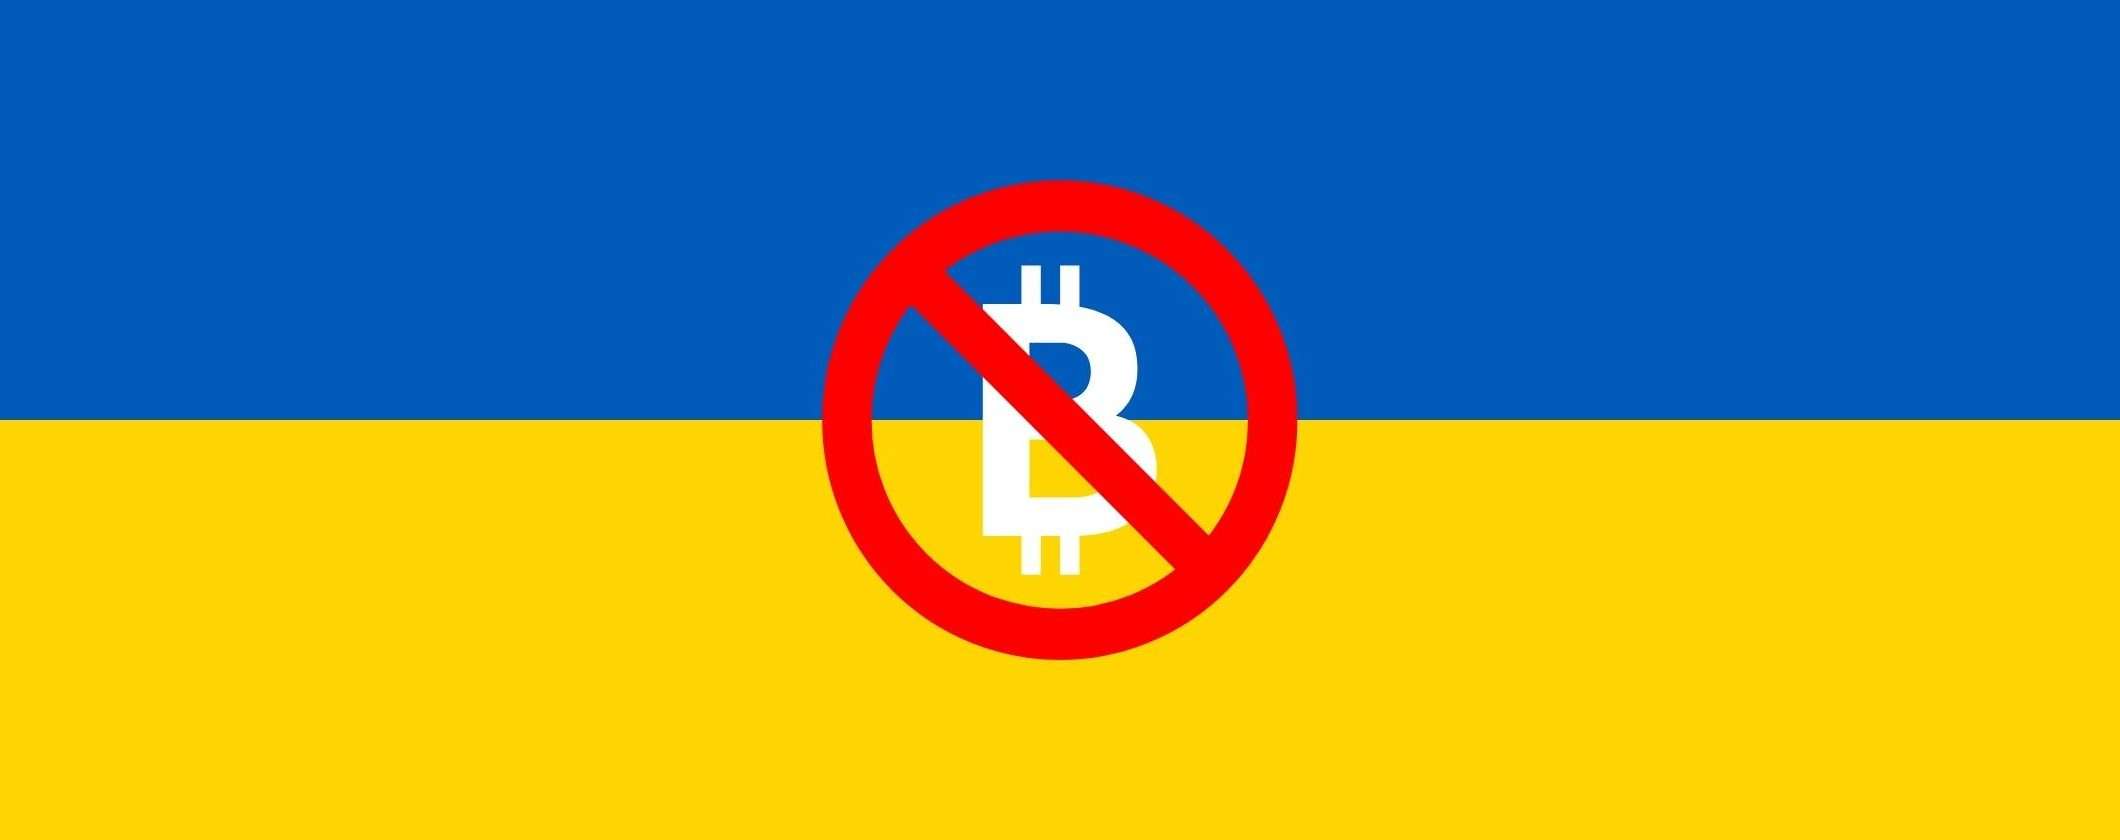 Criptovalute: banca ucraina vieta il trasferimento di denaro agli exchange